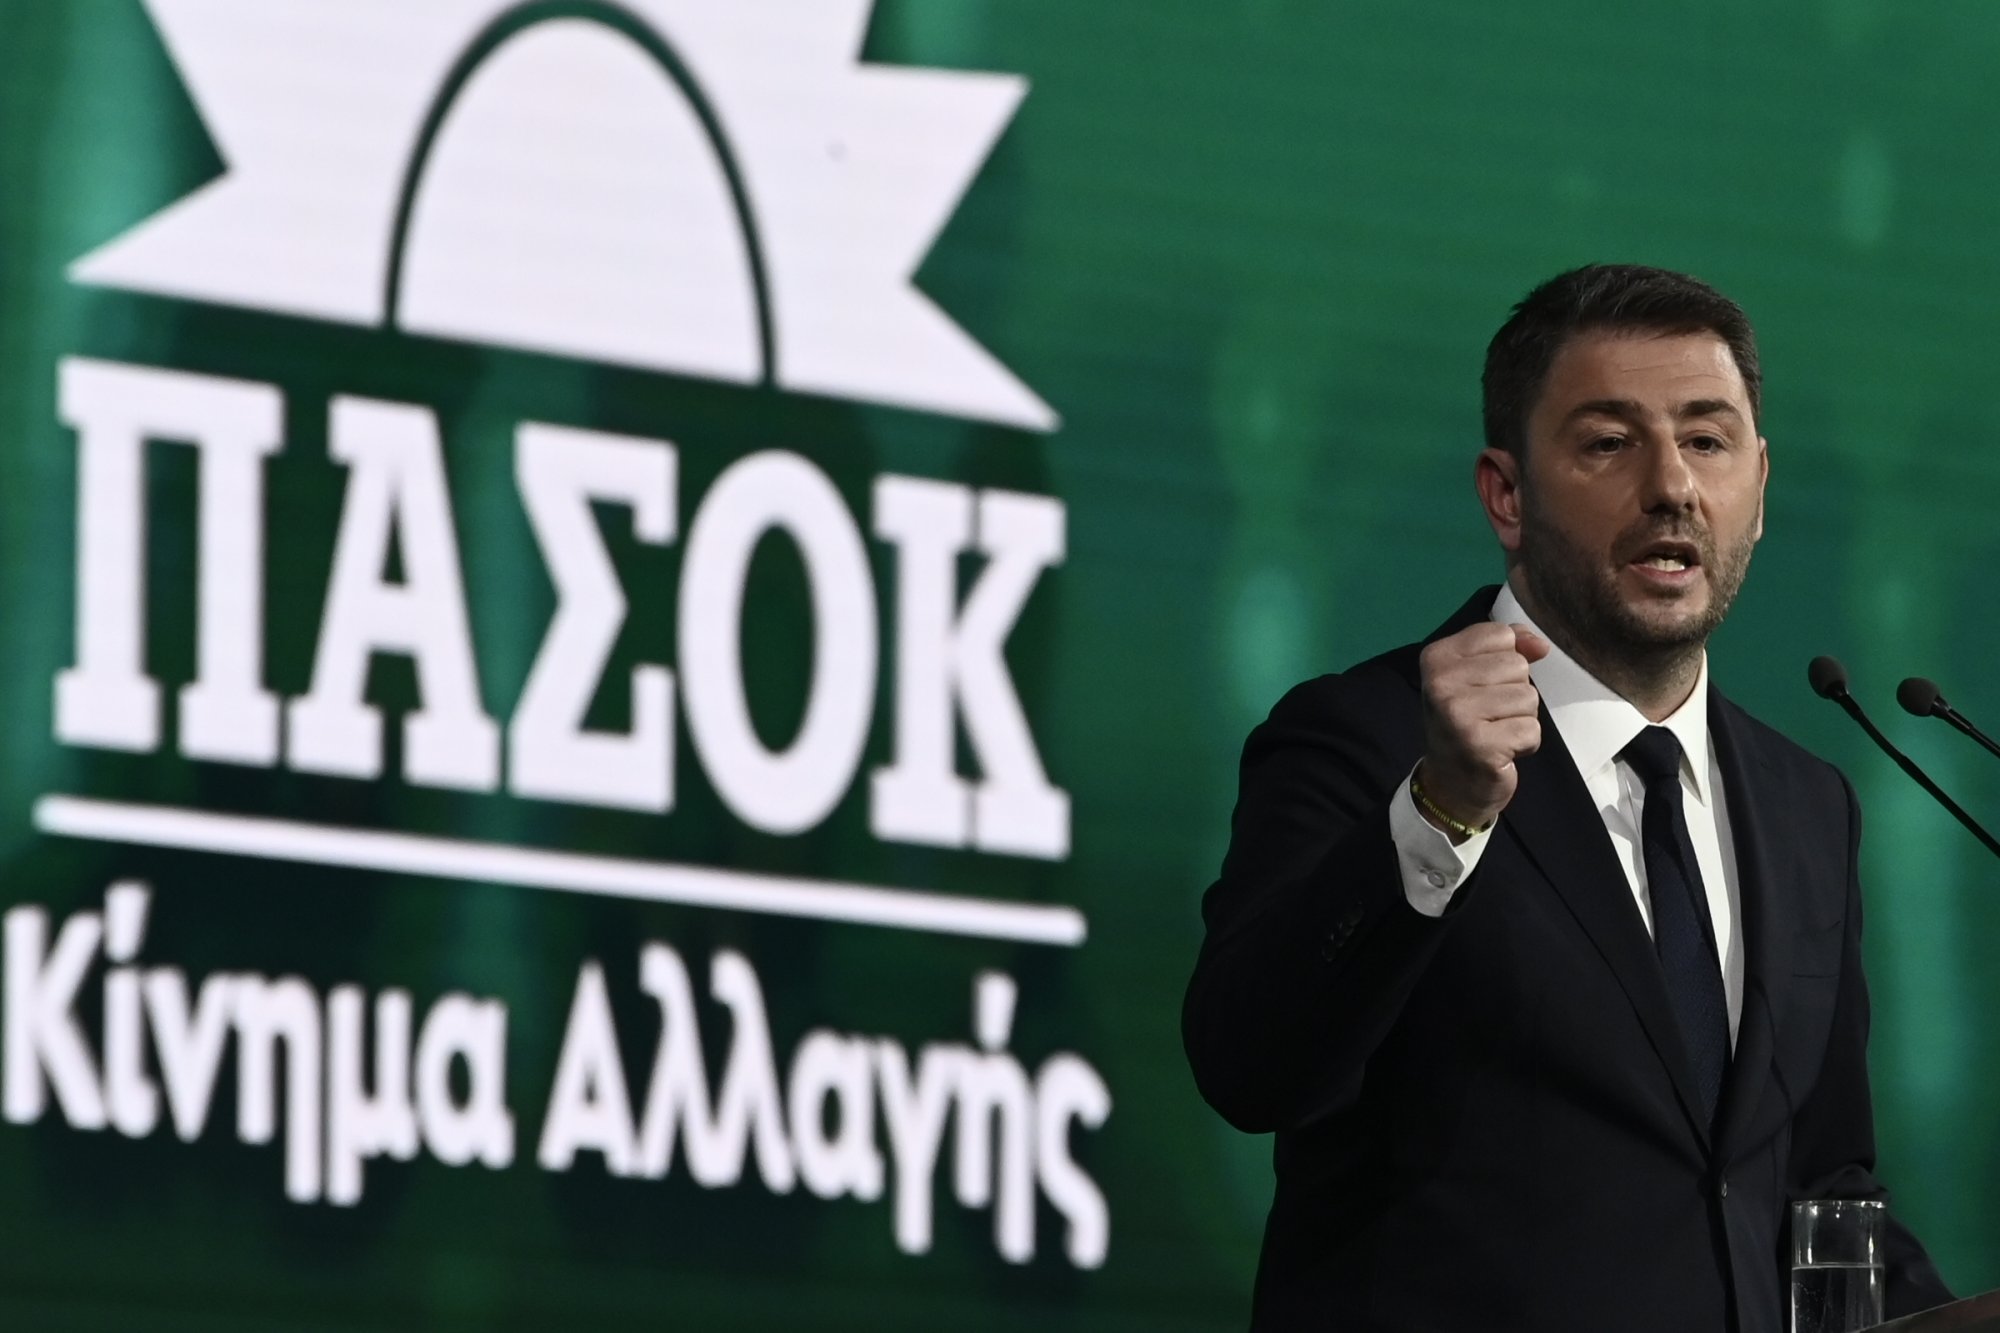 Πληροφορίες του in: Ο Νίκος Ανδρουλάκης την Τετάρτη ανακοινώνει εσωκομματικές εκλογές